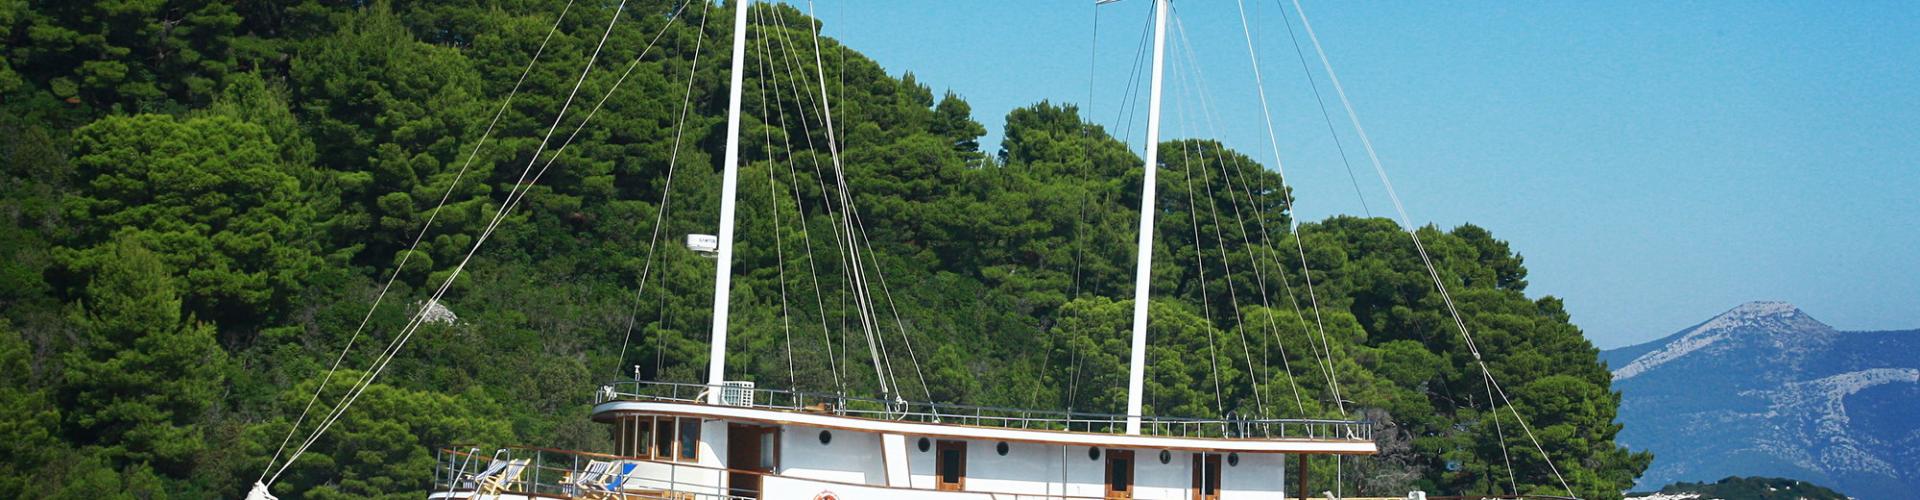 Premium navire de croisière MV Meridijan- voilier à moteur